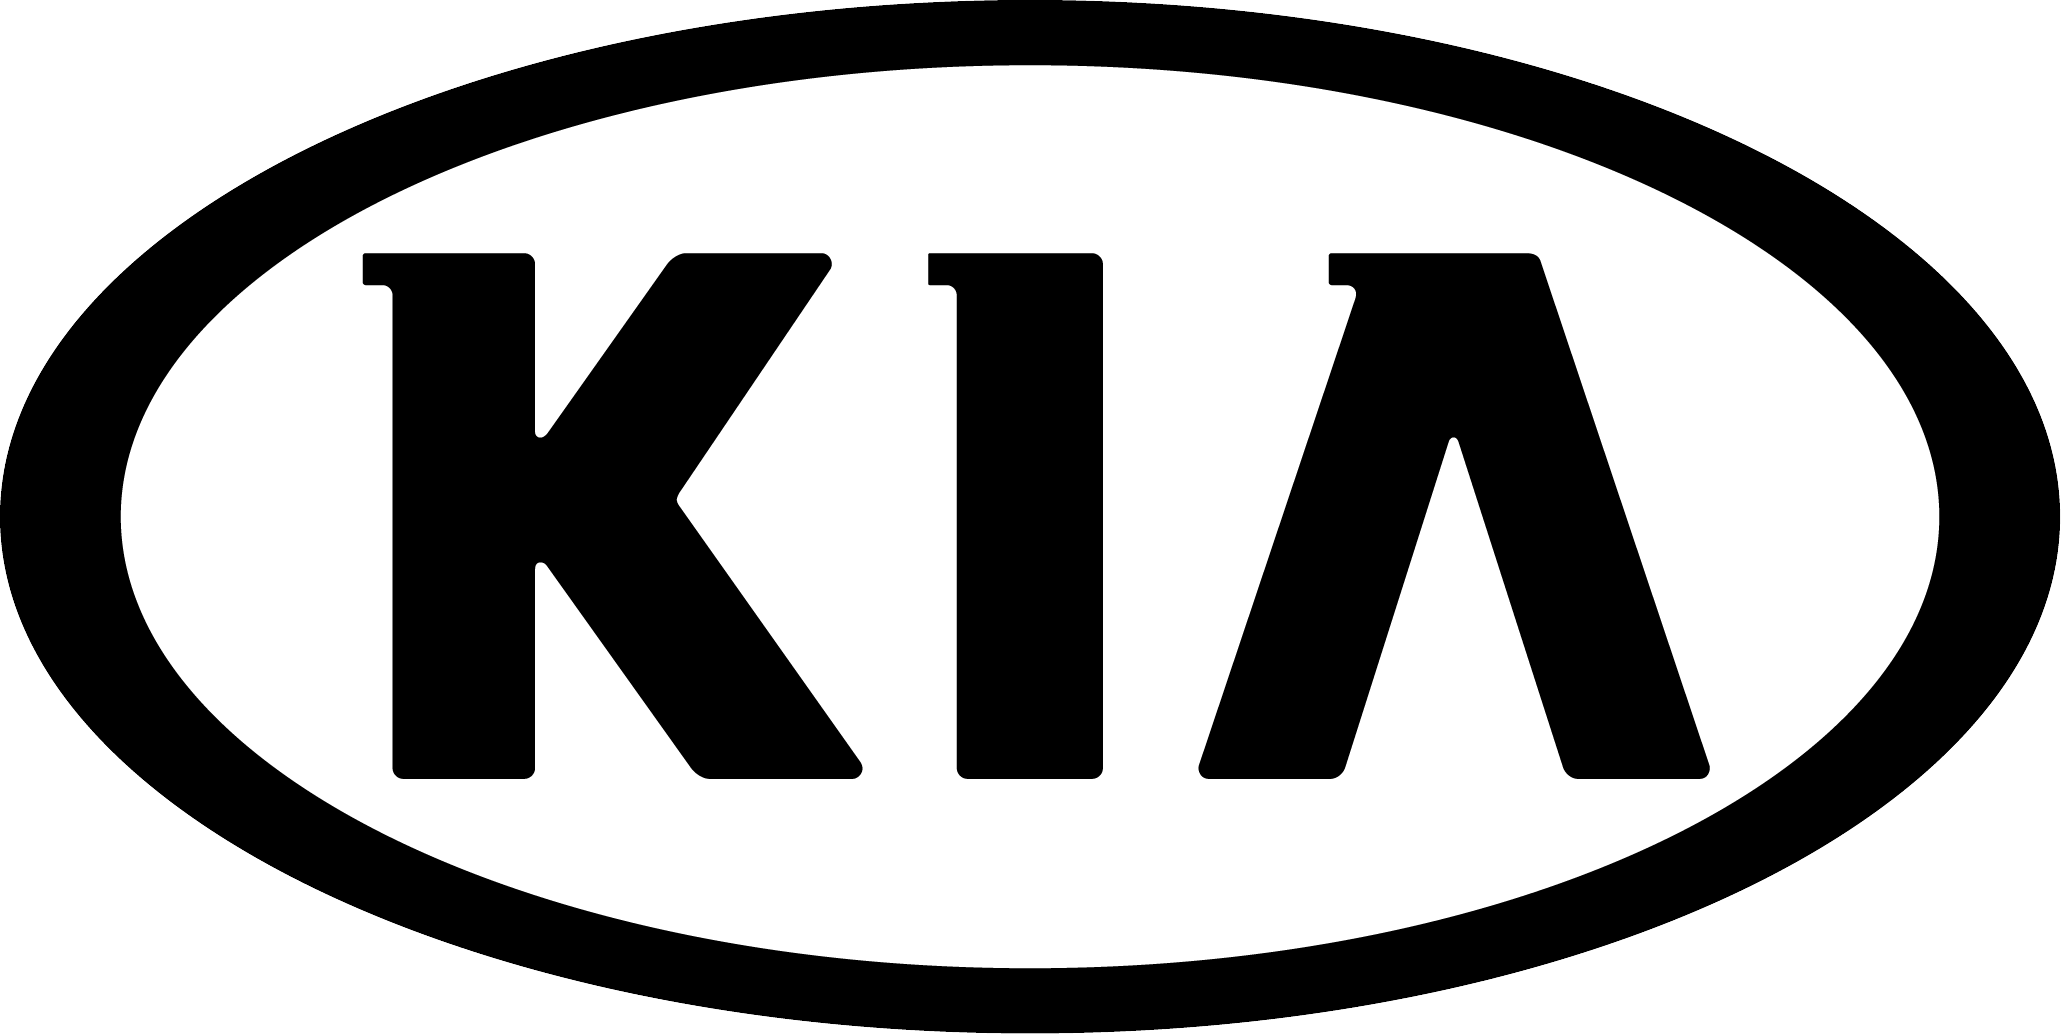 Kia manufacturer logo